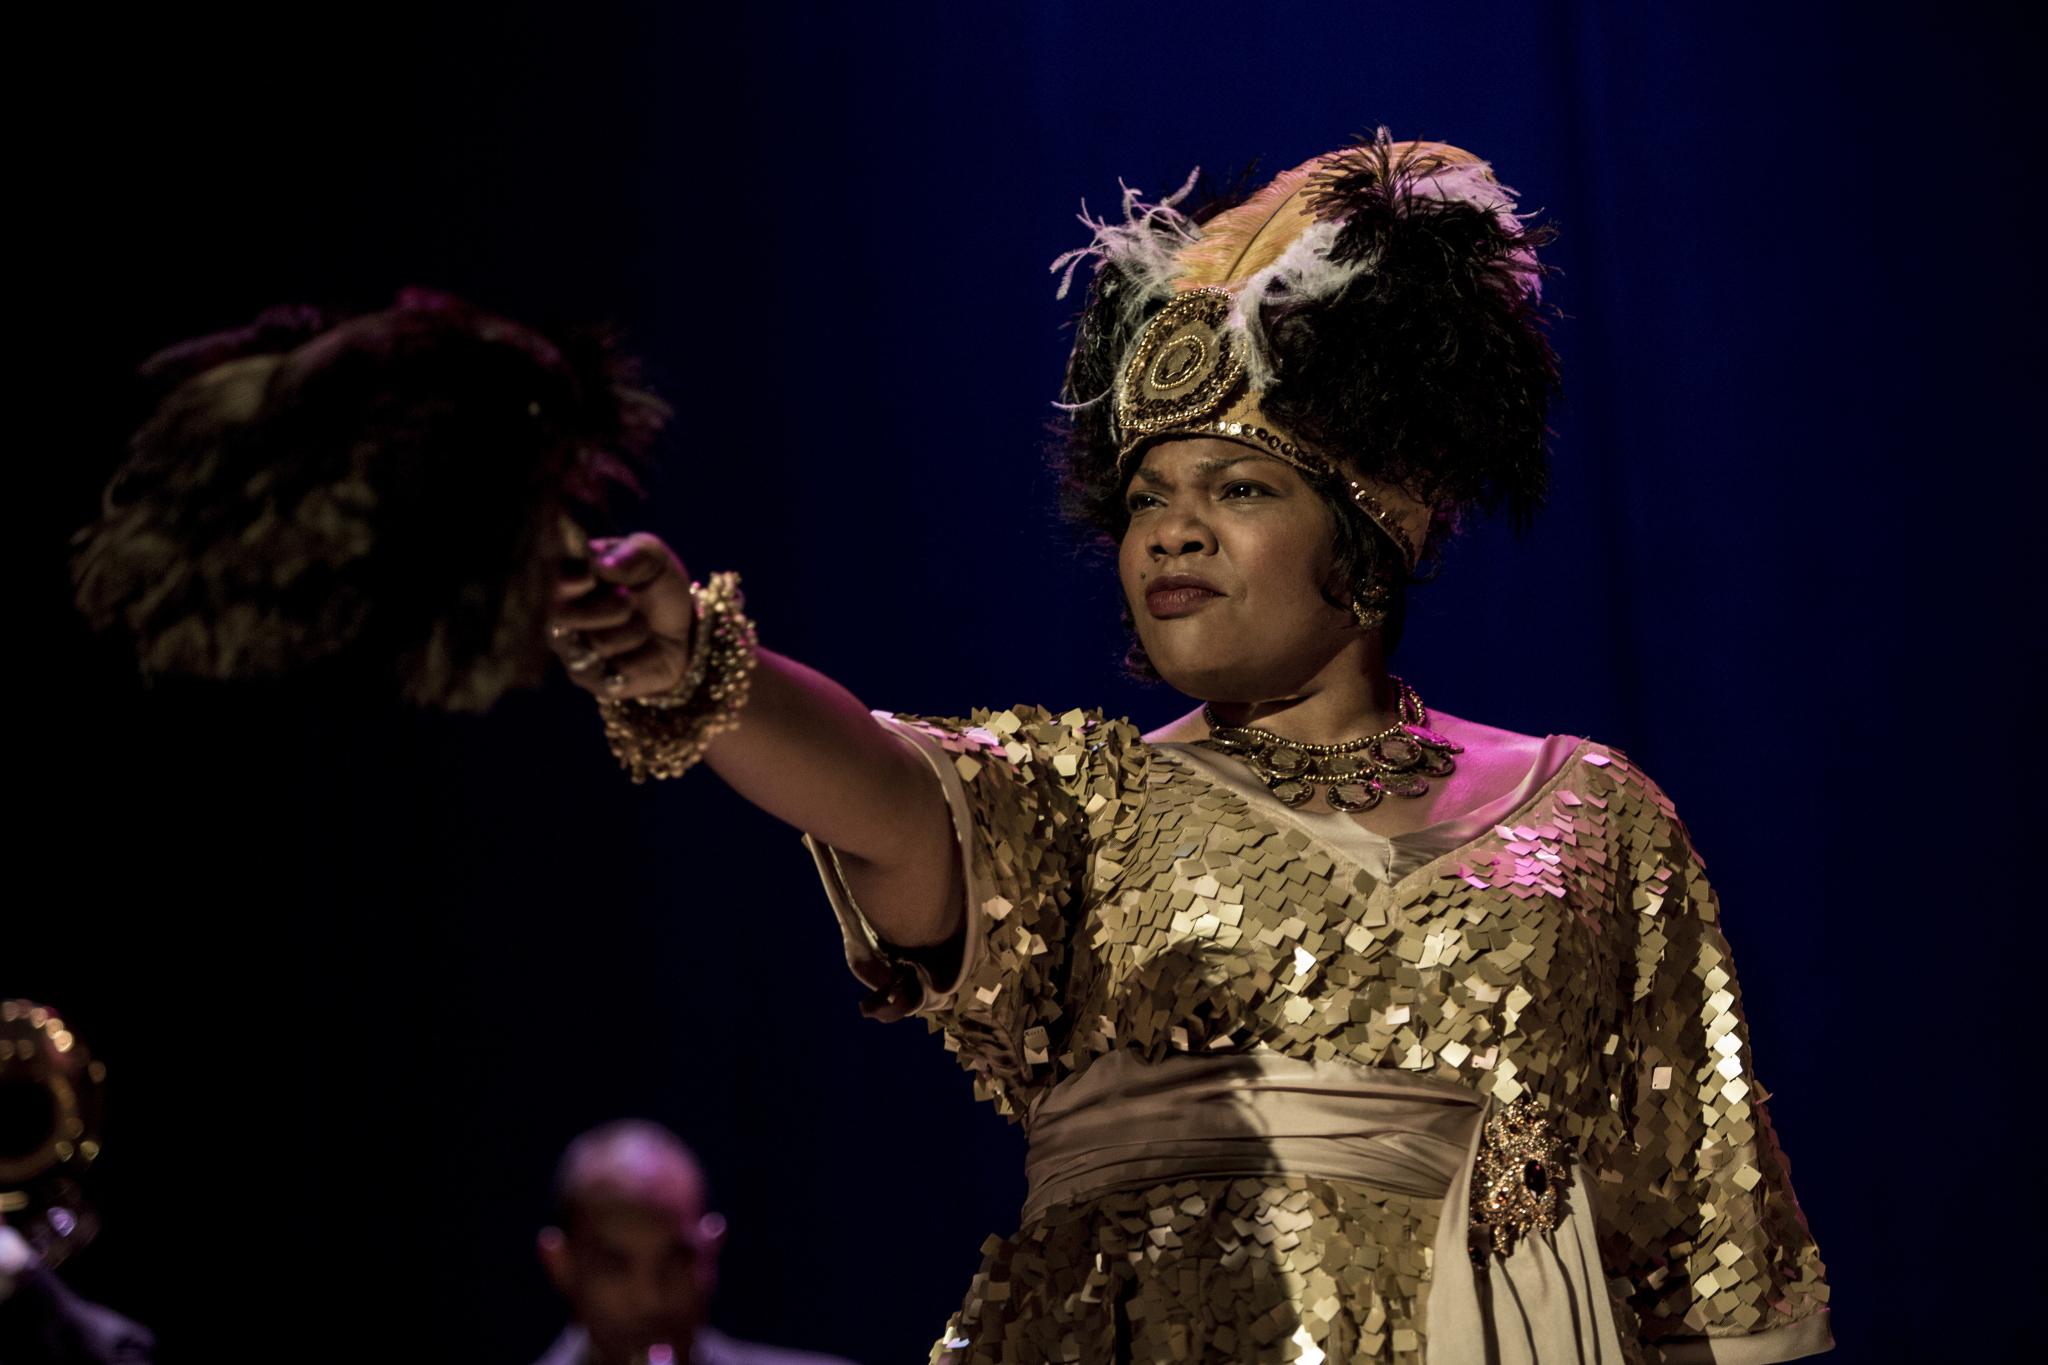 Photos: Sneak Peek HBO's "Bessie" Starring Queen Latifah
